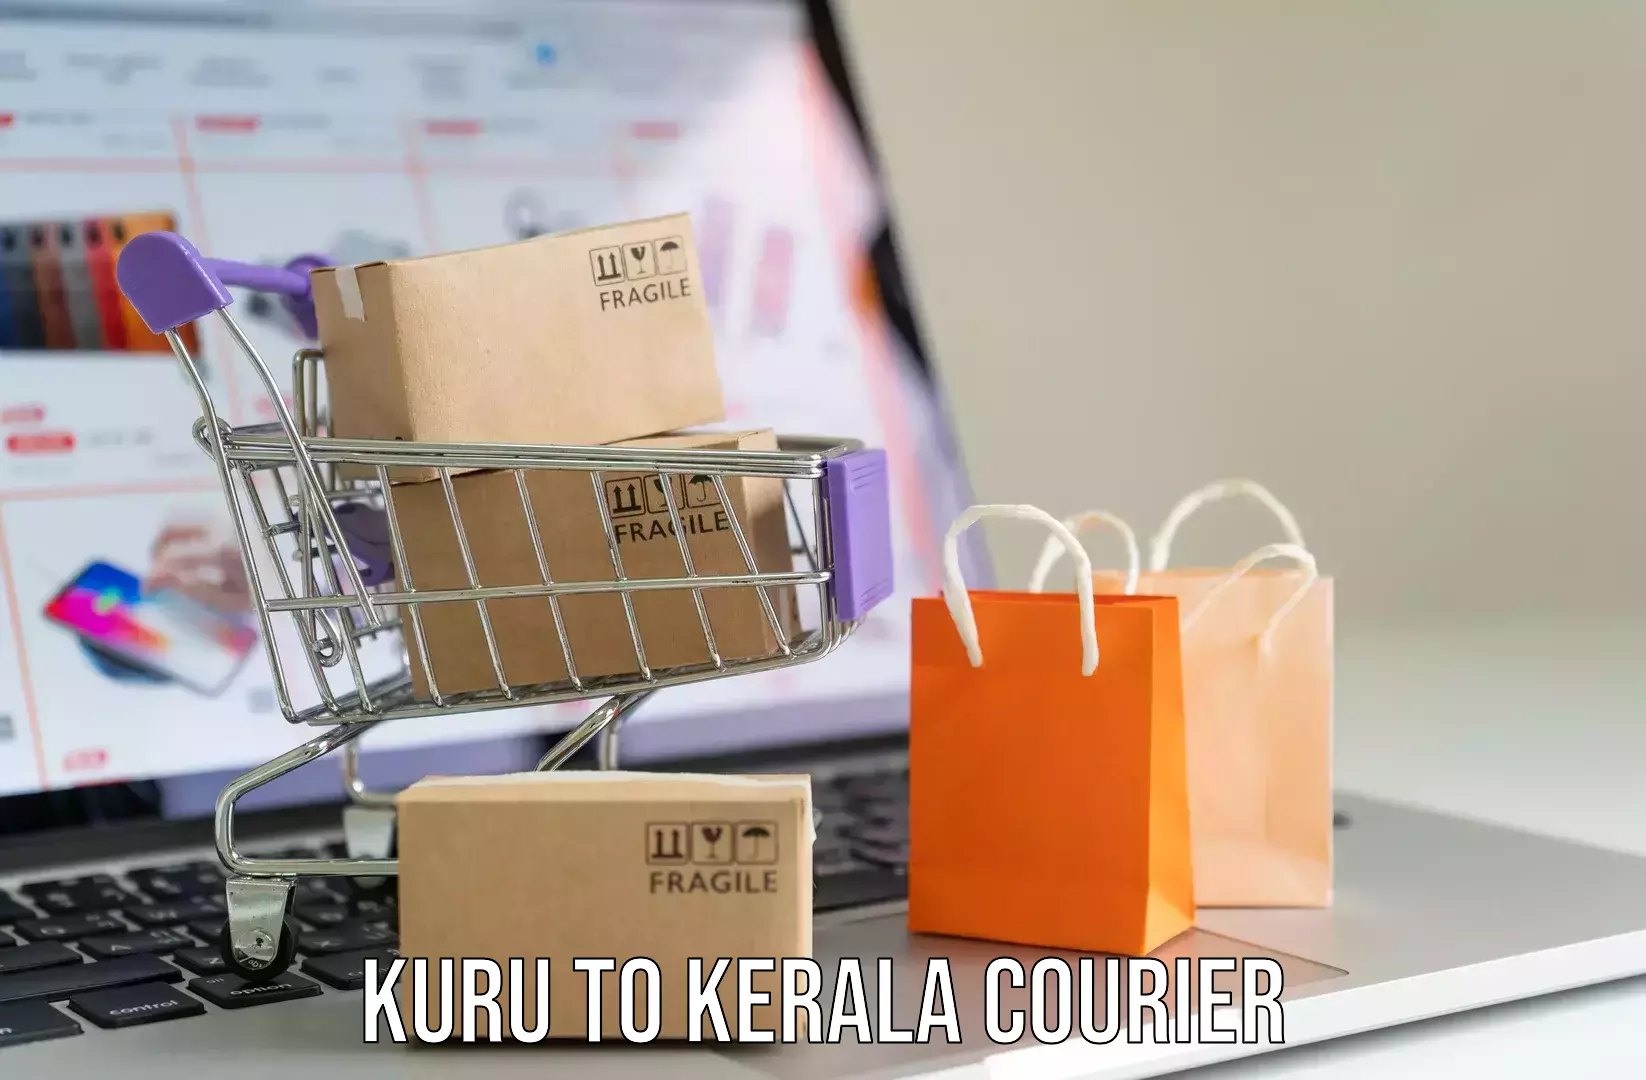 Luggage transport schedule Kuru to Kalpetta